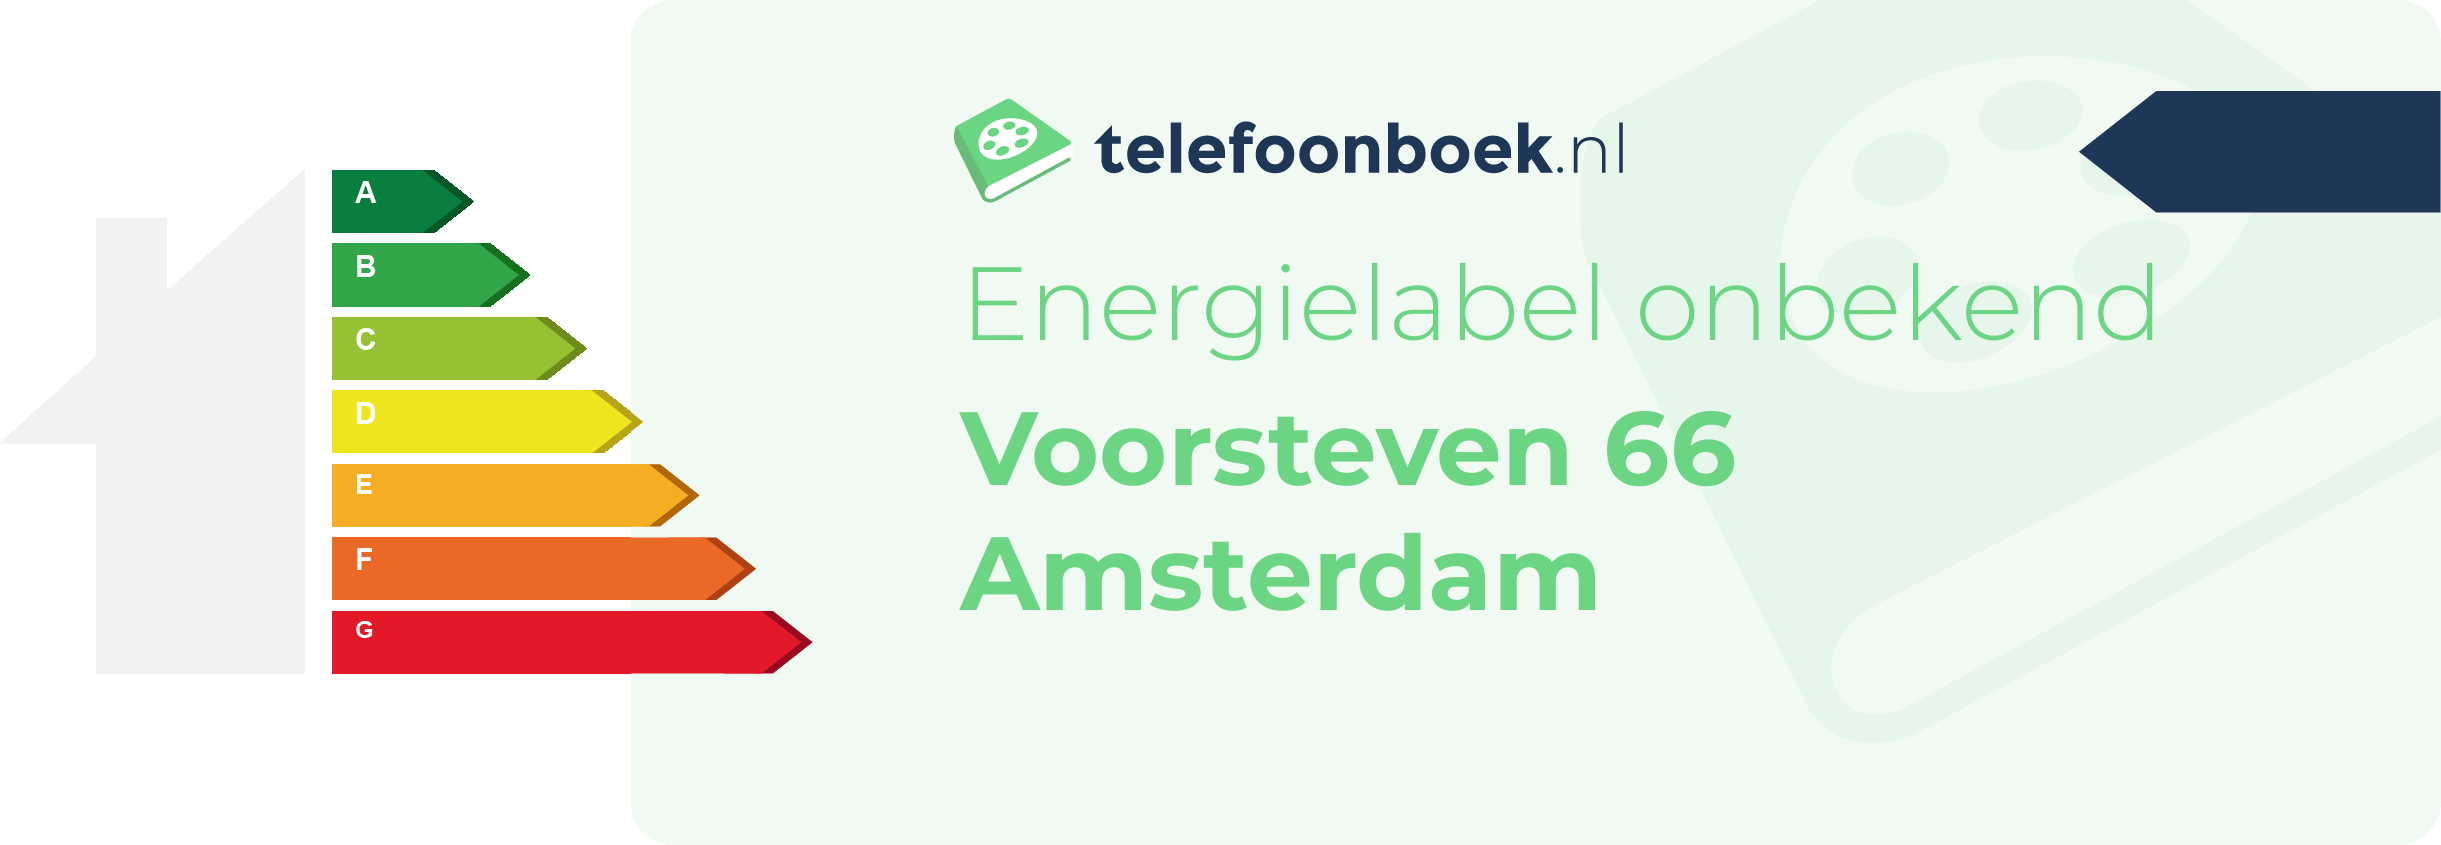 Energielabel Voorsteven 66 Amsterdam